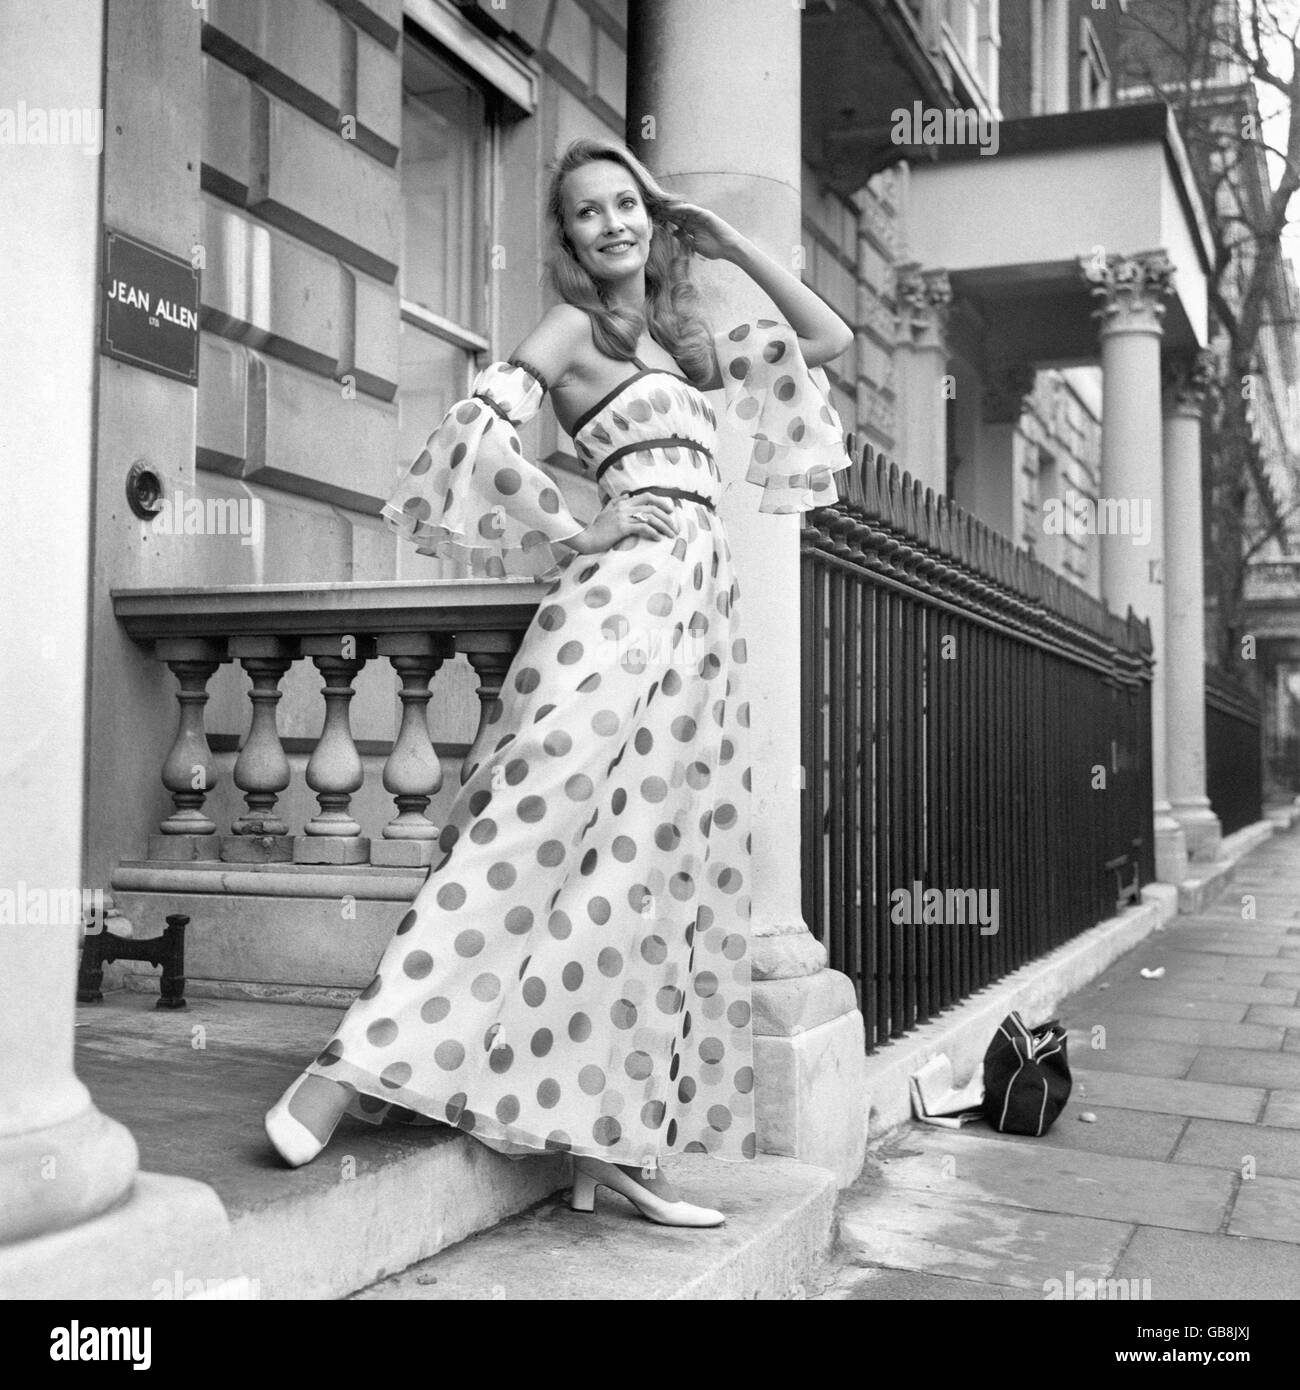 Fashion - Collection de mi-saison de Jean Allen - Londres - 1973 Banque D'Images